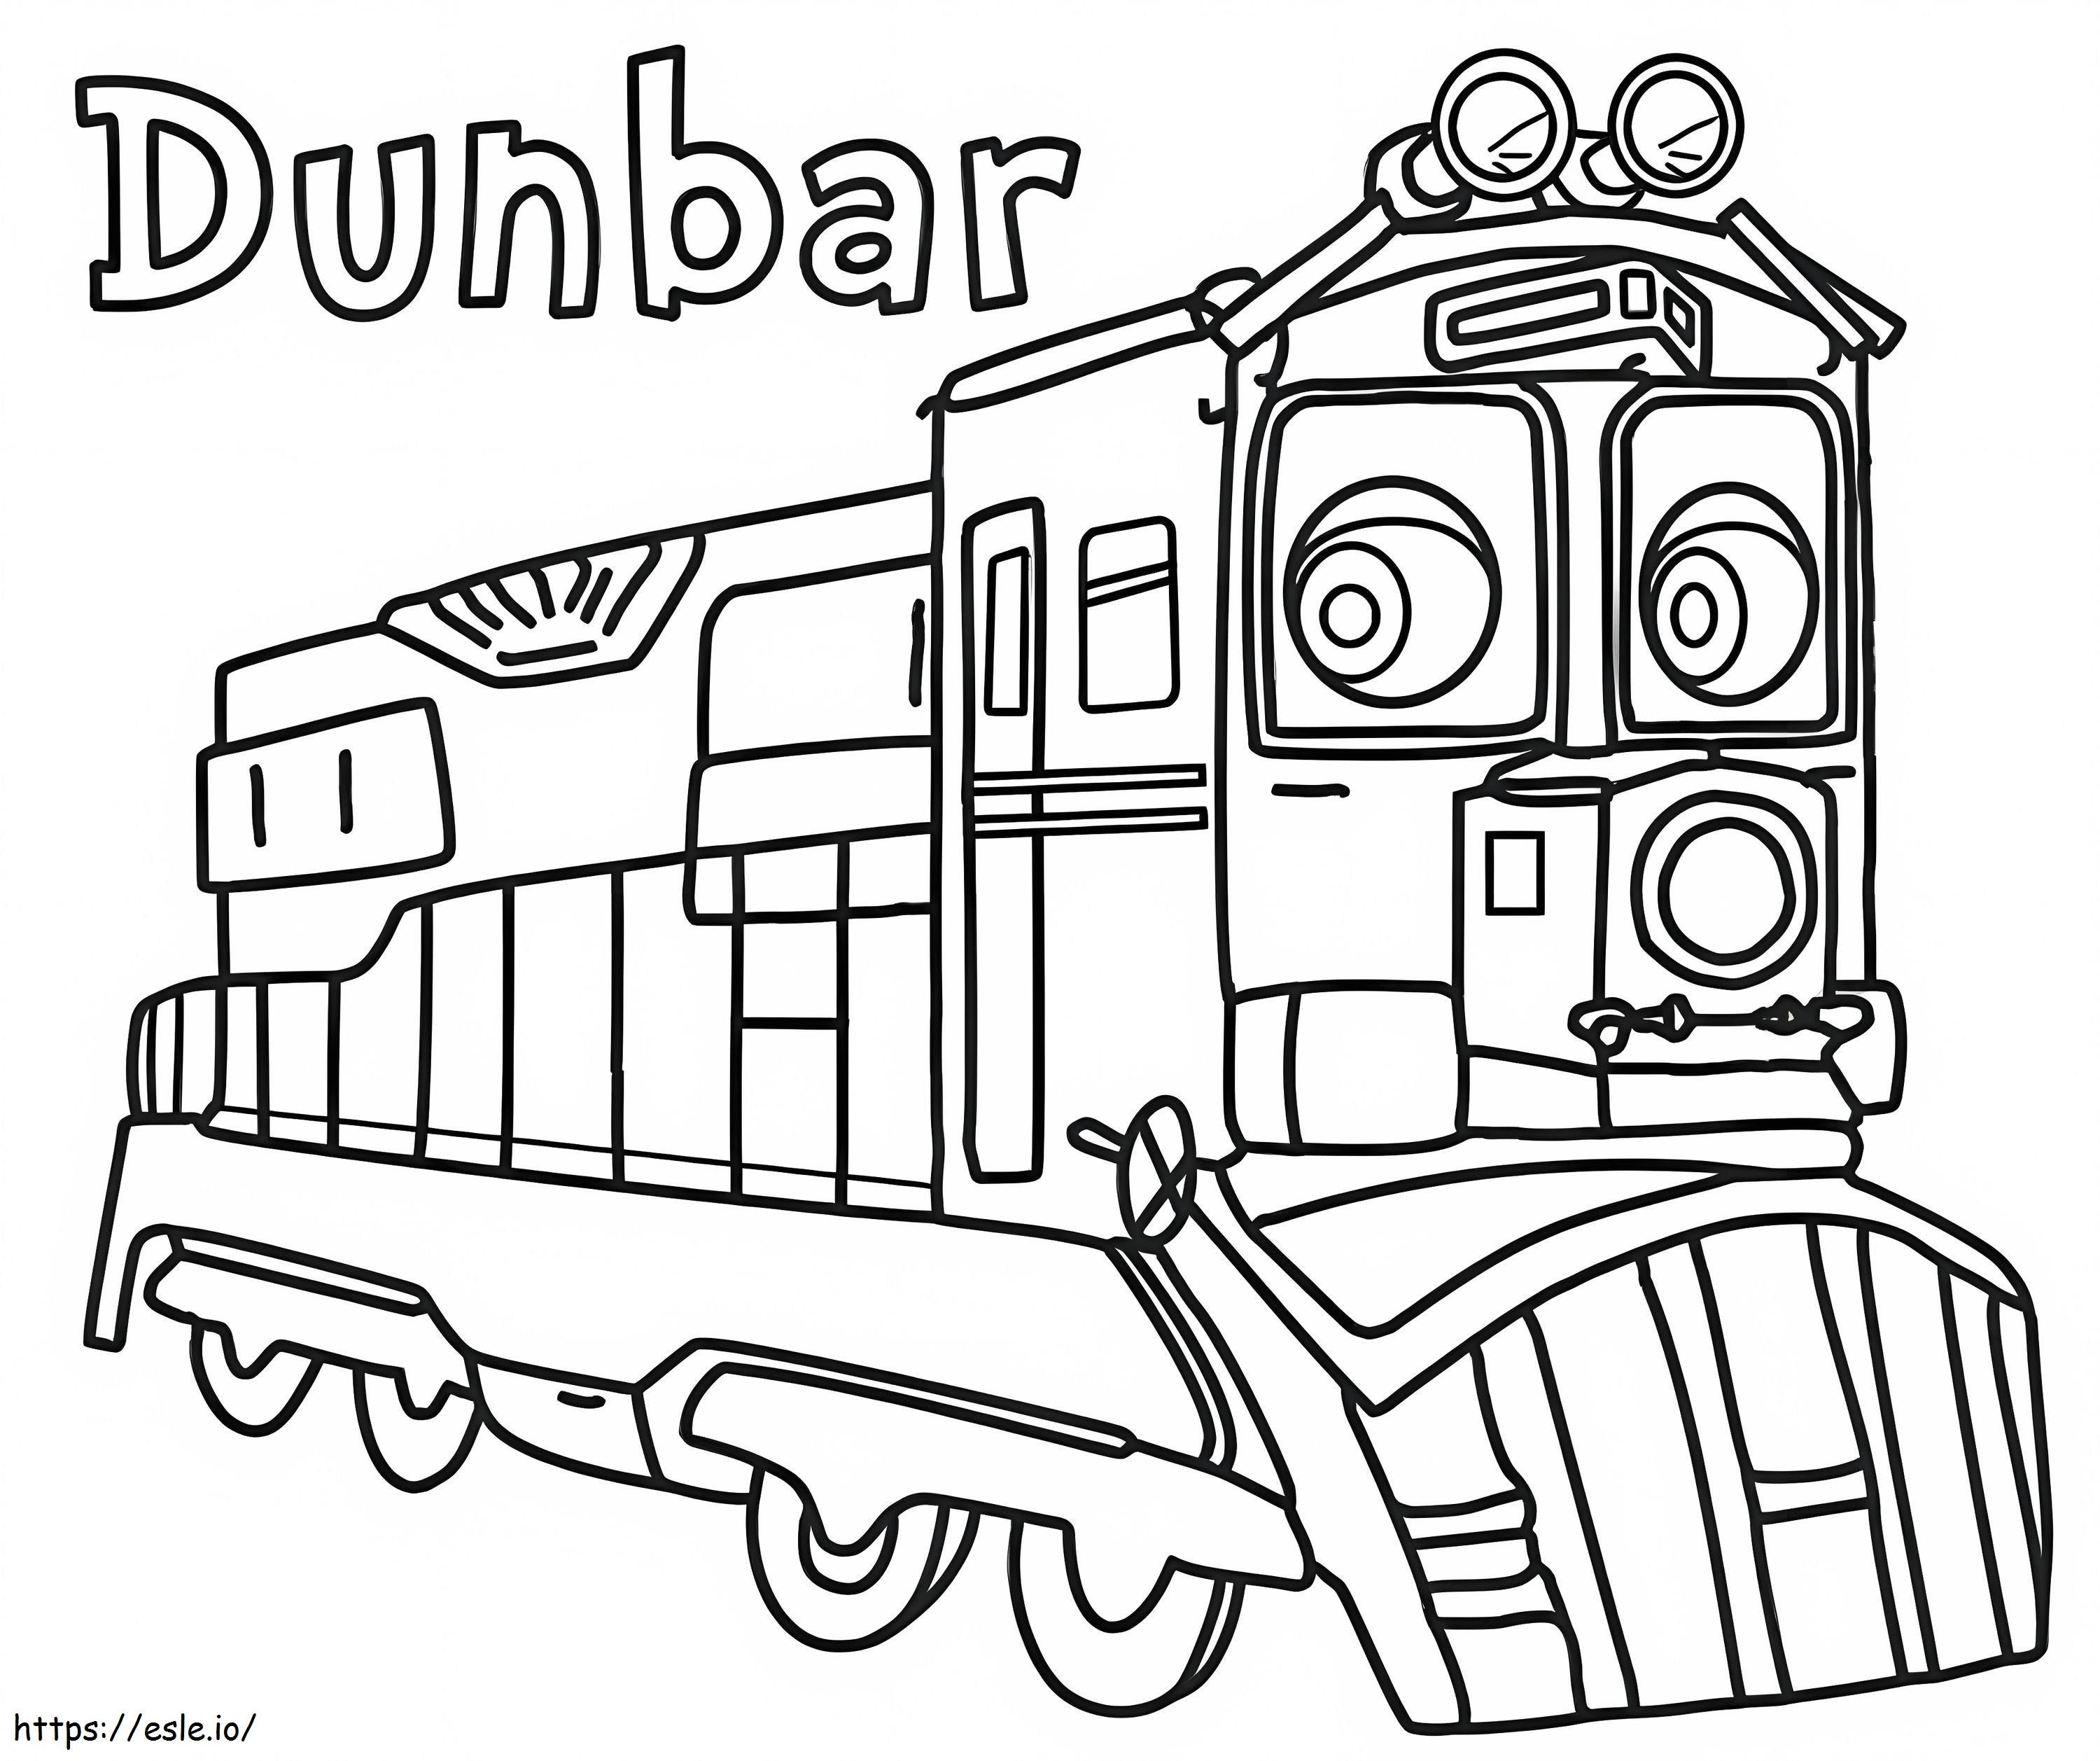 Dunbar z Chuggington kolorowanka